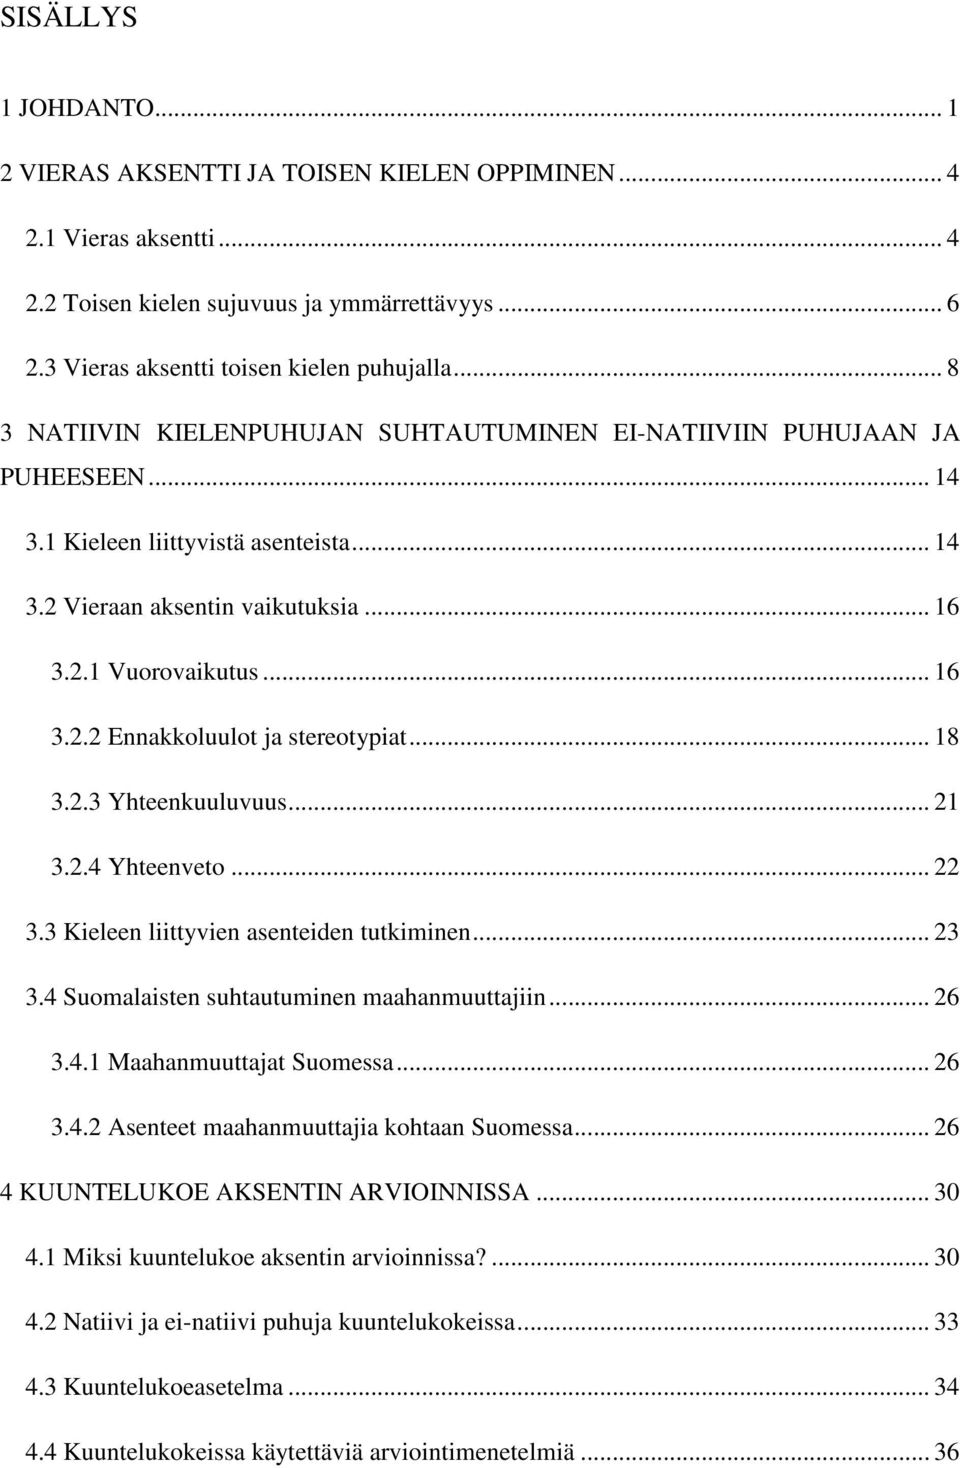 .. 18 3.2.3 Yhteenkuuluvuus... 21 3.2.4 Yhteenveto... 22 3.3 Kieleen liittyvien asenteiden tutkiminen... 23 3.4 Suomalaisten suhtautuminen maahanmuuttajiin... 26 3.4.1 Maahanmuuttajat Suomessa... 26 3.4.2 Asenteet maahanmuuttajia kohtaan Suomessa.